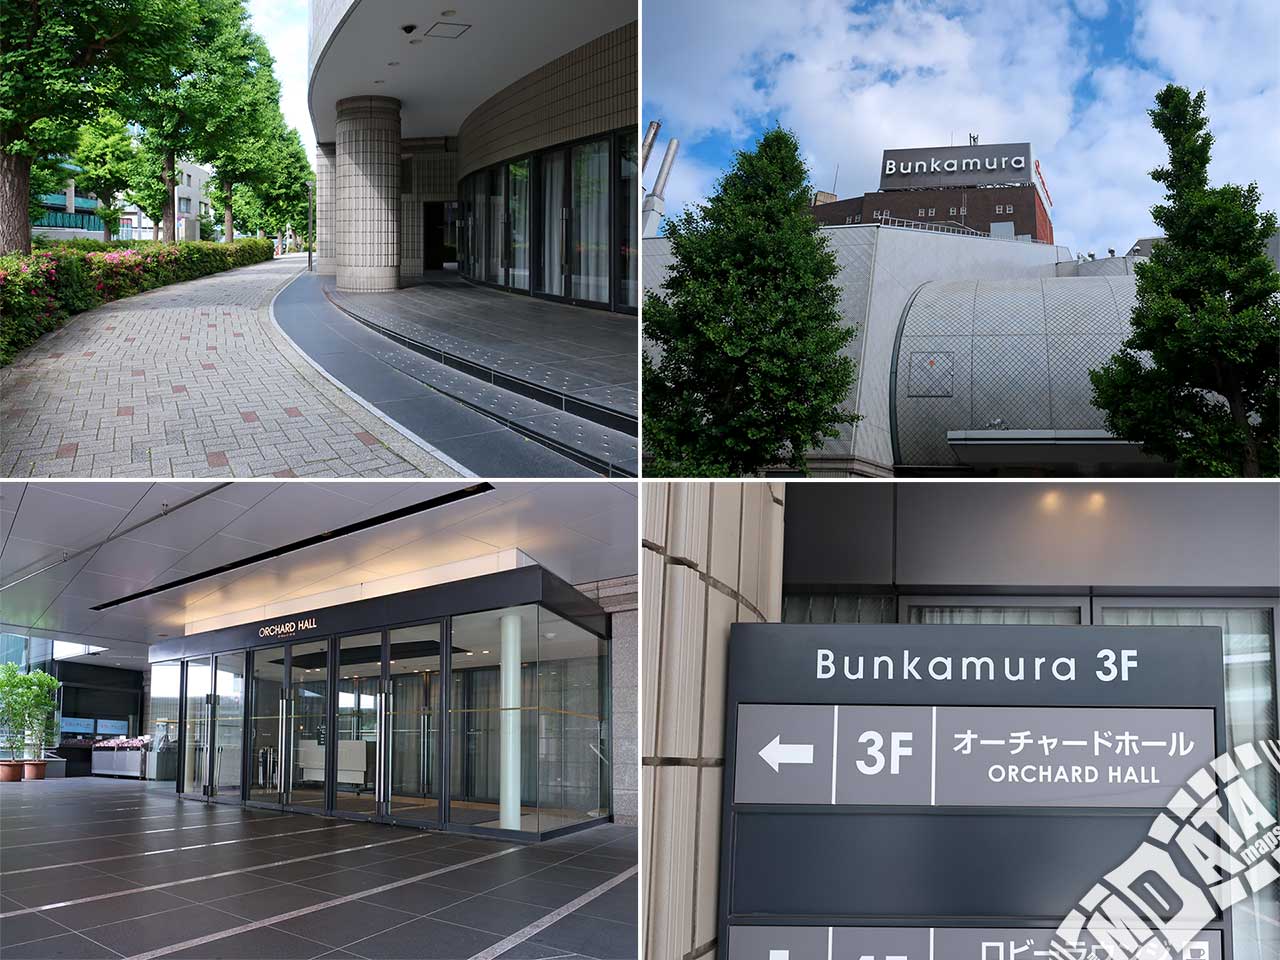 Bunkamuraオーチャードホールの写真 撮影日:2019/5/17 Photo taken on 2019/05/17